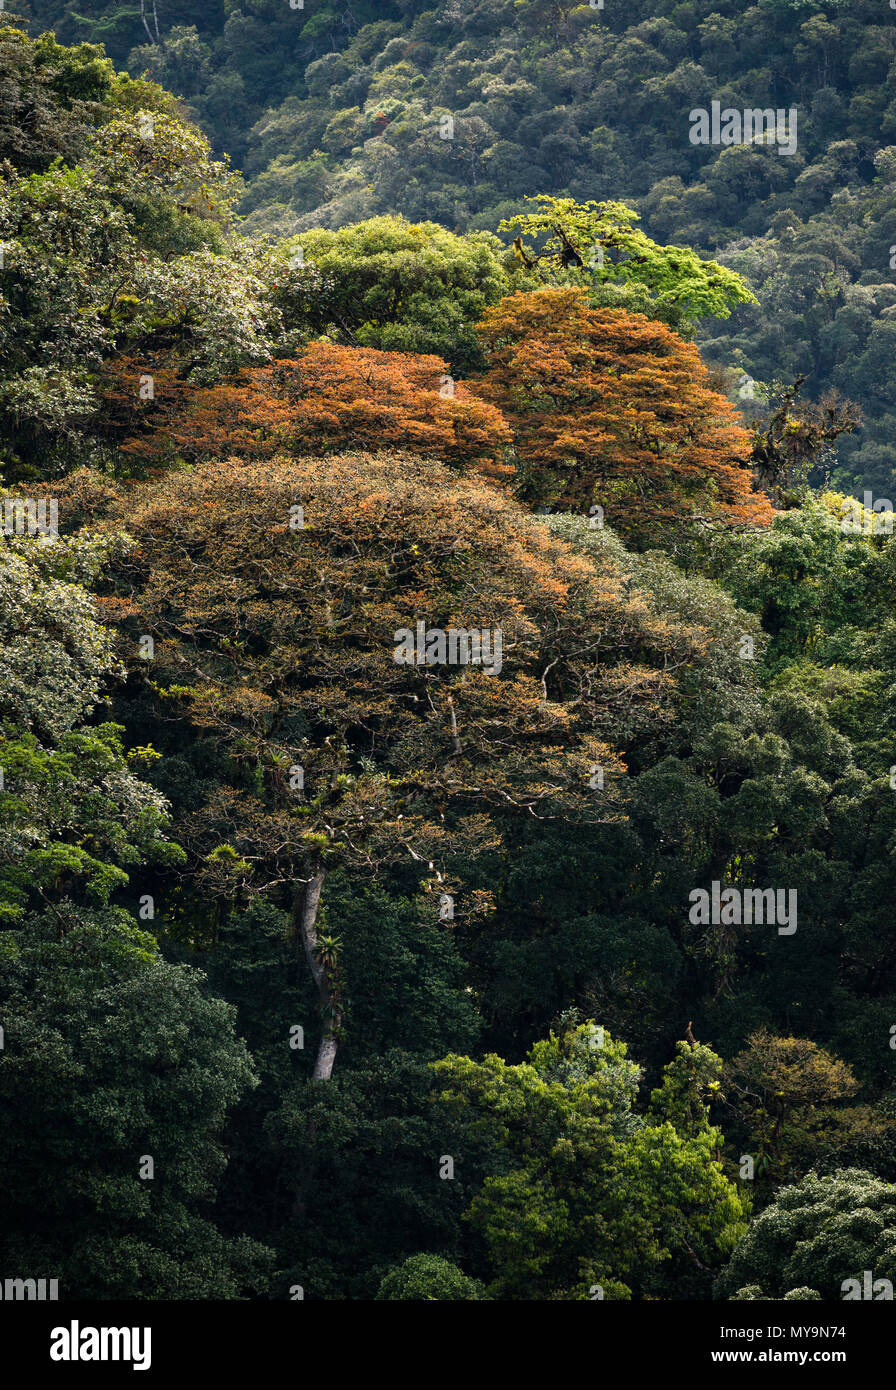 Grandes árboles de Jatobá (Hymenaea courbaril) con coloridas hojas nuevas, en primaria de Selva Atlántica del sudeste de Brasil. Foto de stock